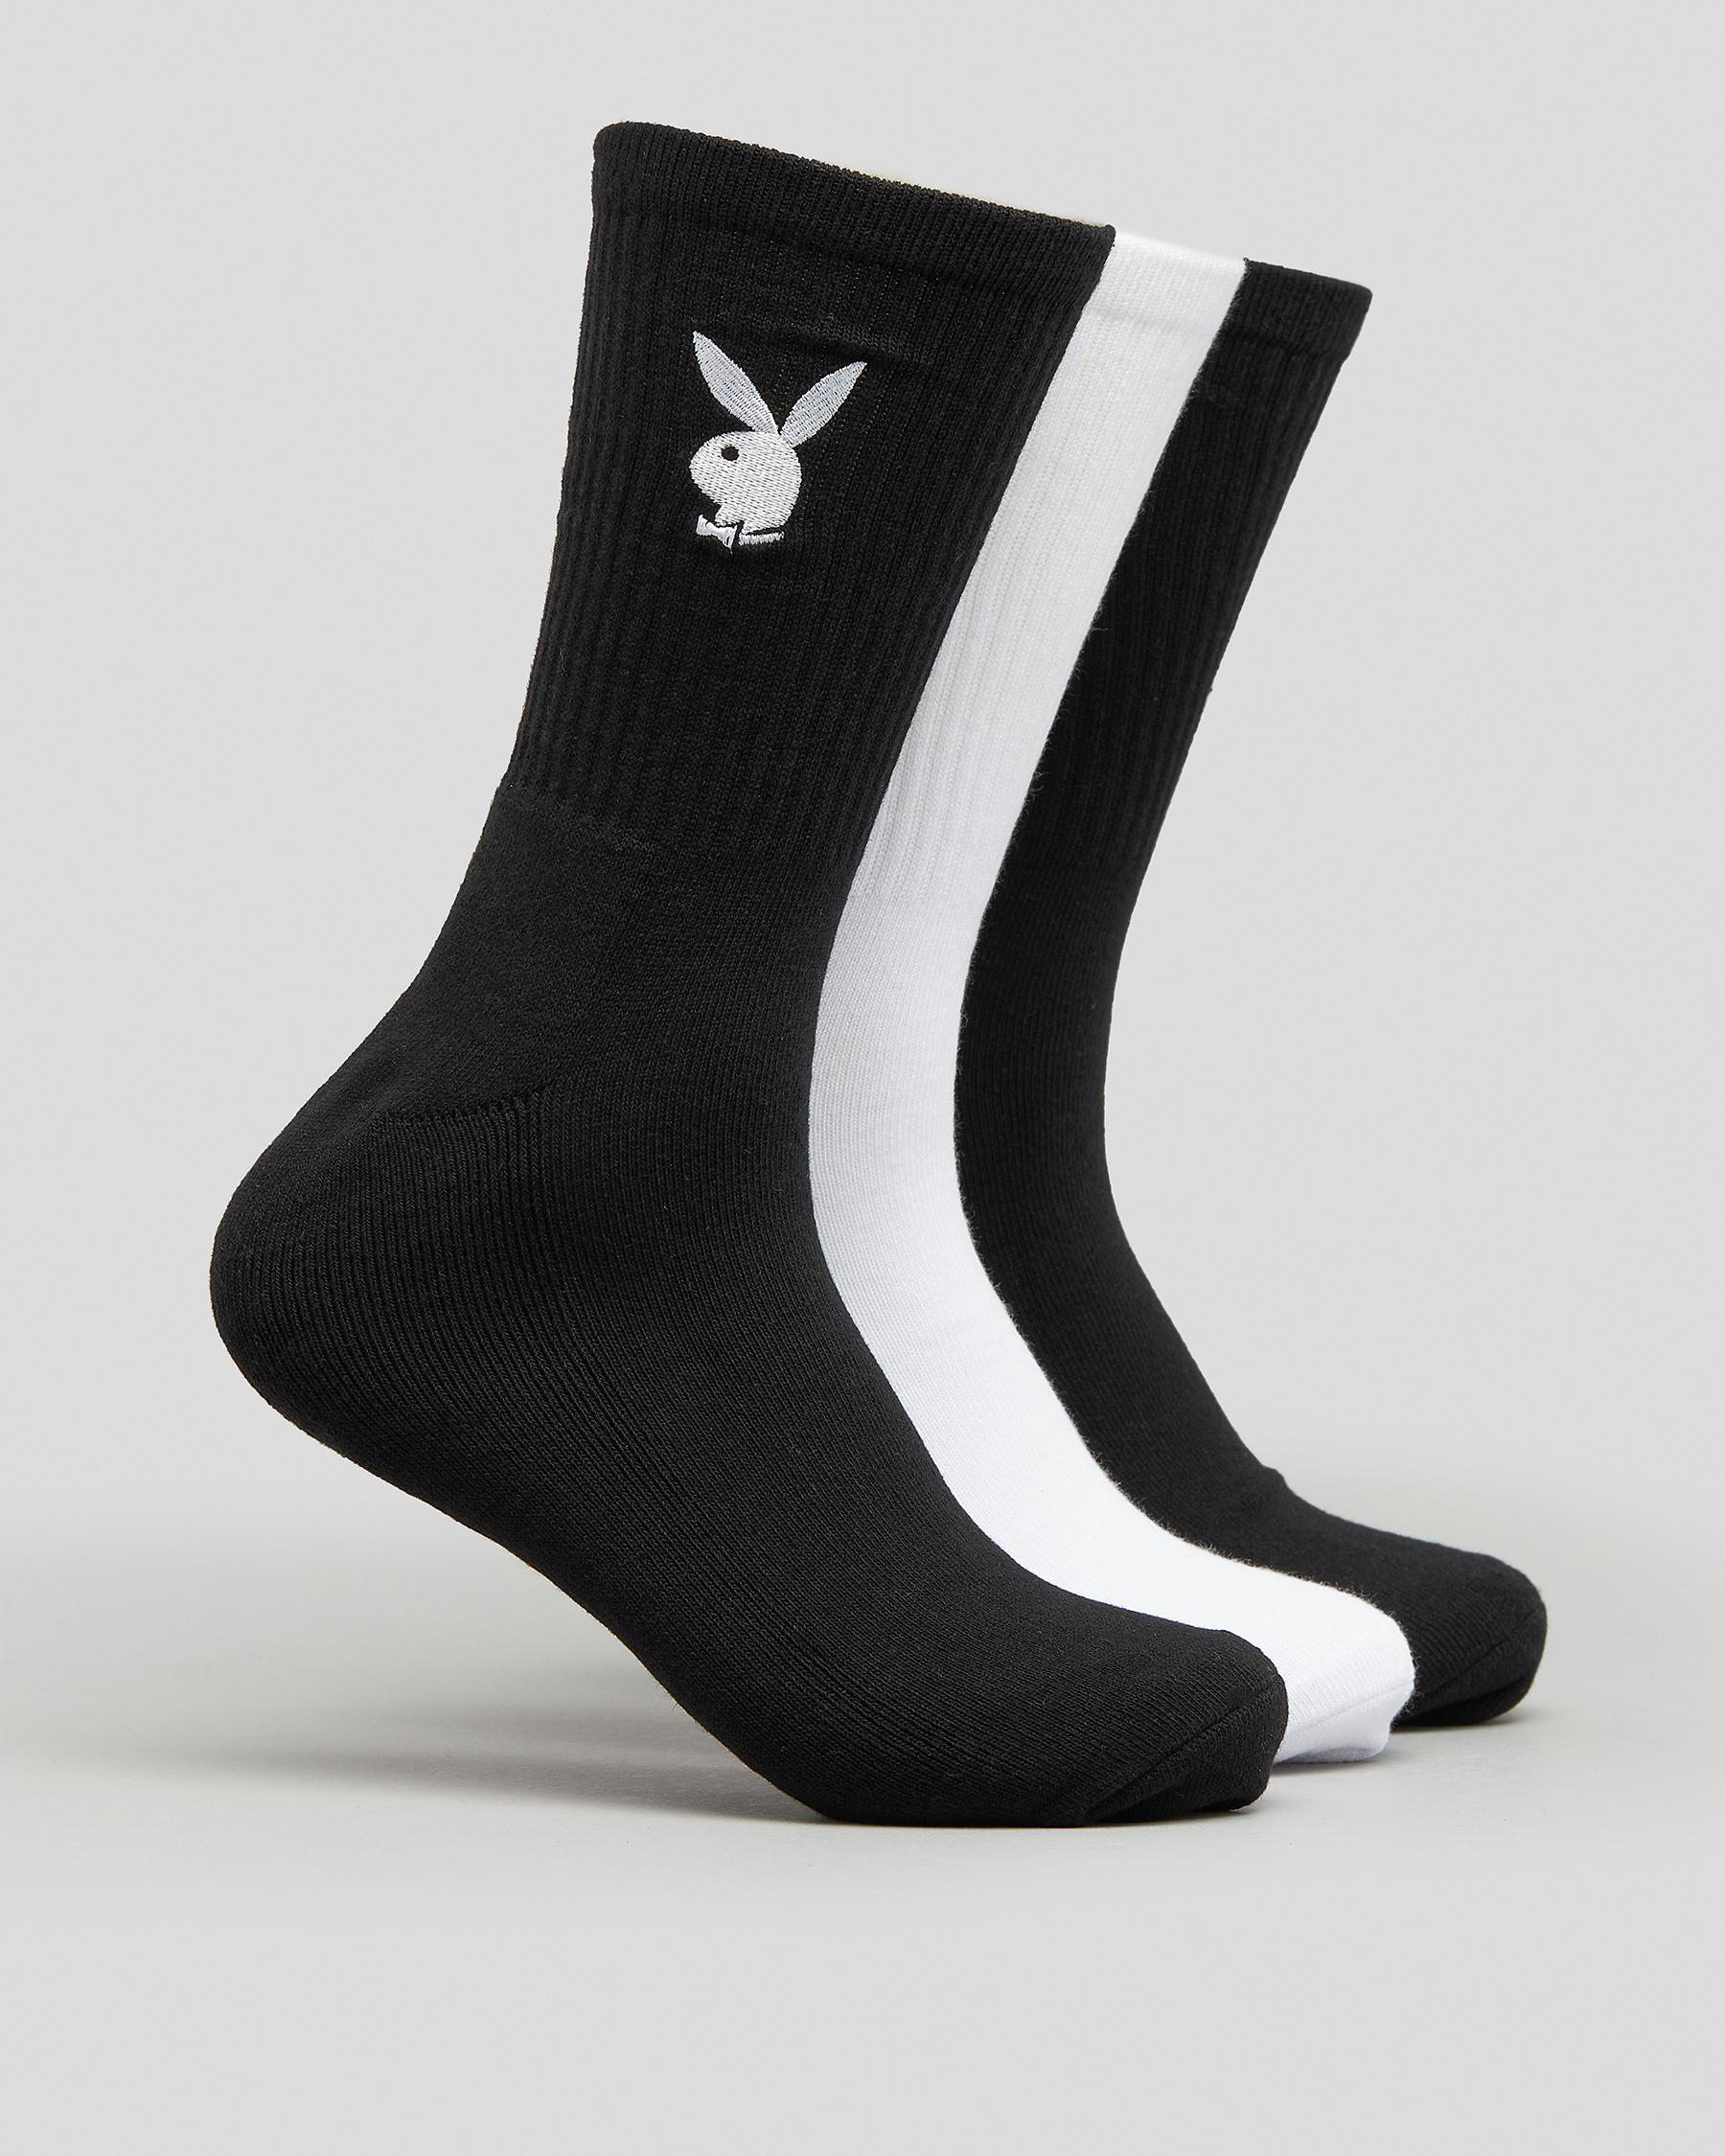 Playboy Bunny Basics Socks In Black/white - FREE* Shipping & Easy ...